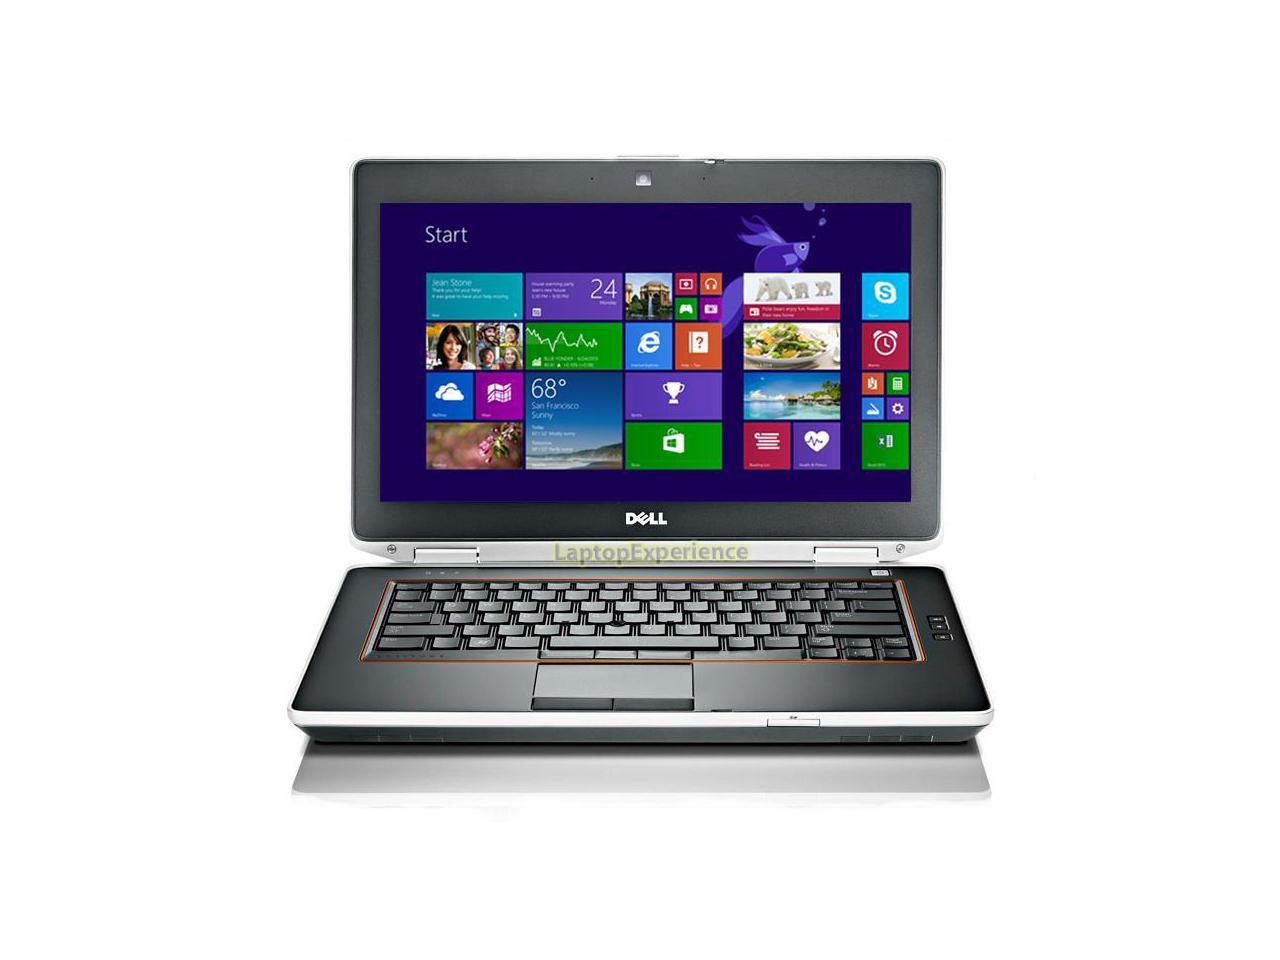 Dell Latitude E6420 Laptop WEBCAM - HDMI - i5 2.6ghz - 3GB DDR3 - 250GB HDD - DVDRW - Windows 8.1 32